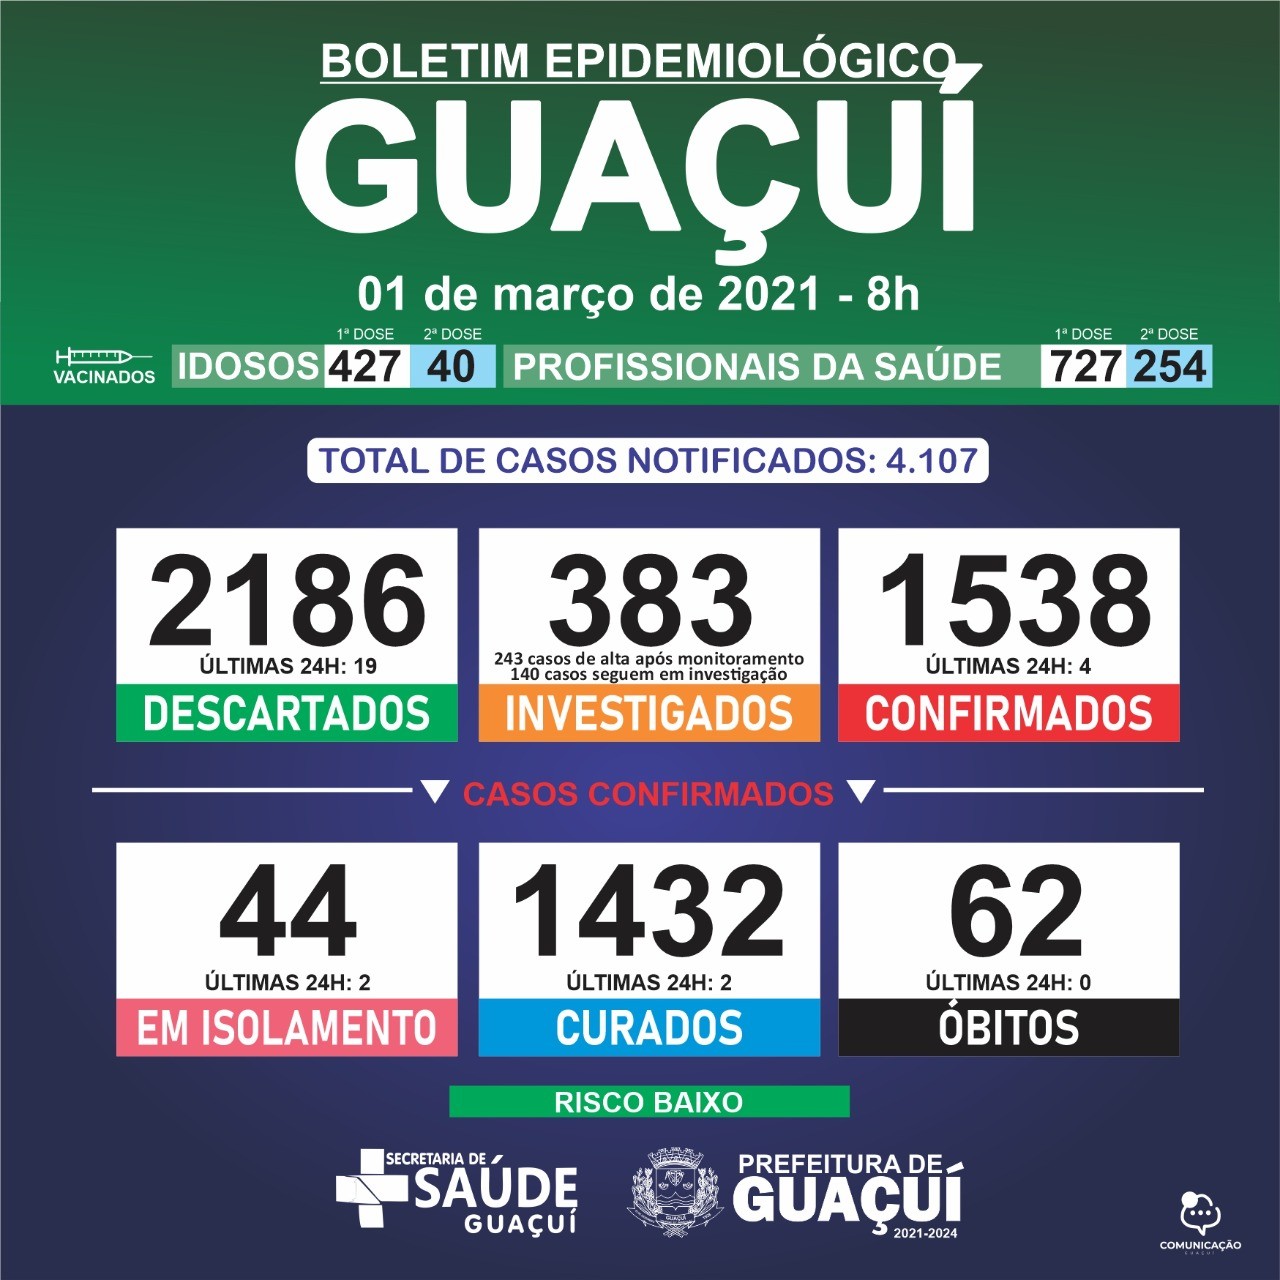 Boletim Epidemiológico 01/03/21: Guaçuí registra 2 curados e 4 casos confirmados de Covid-19